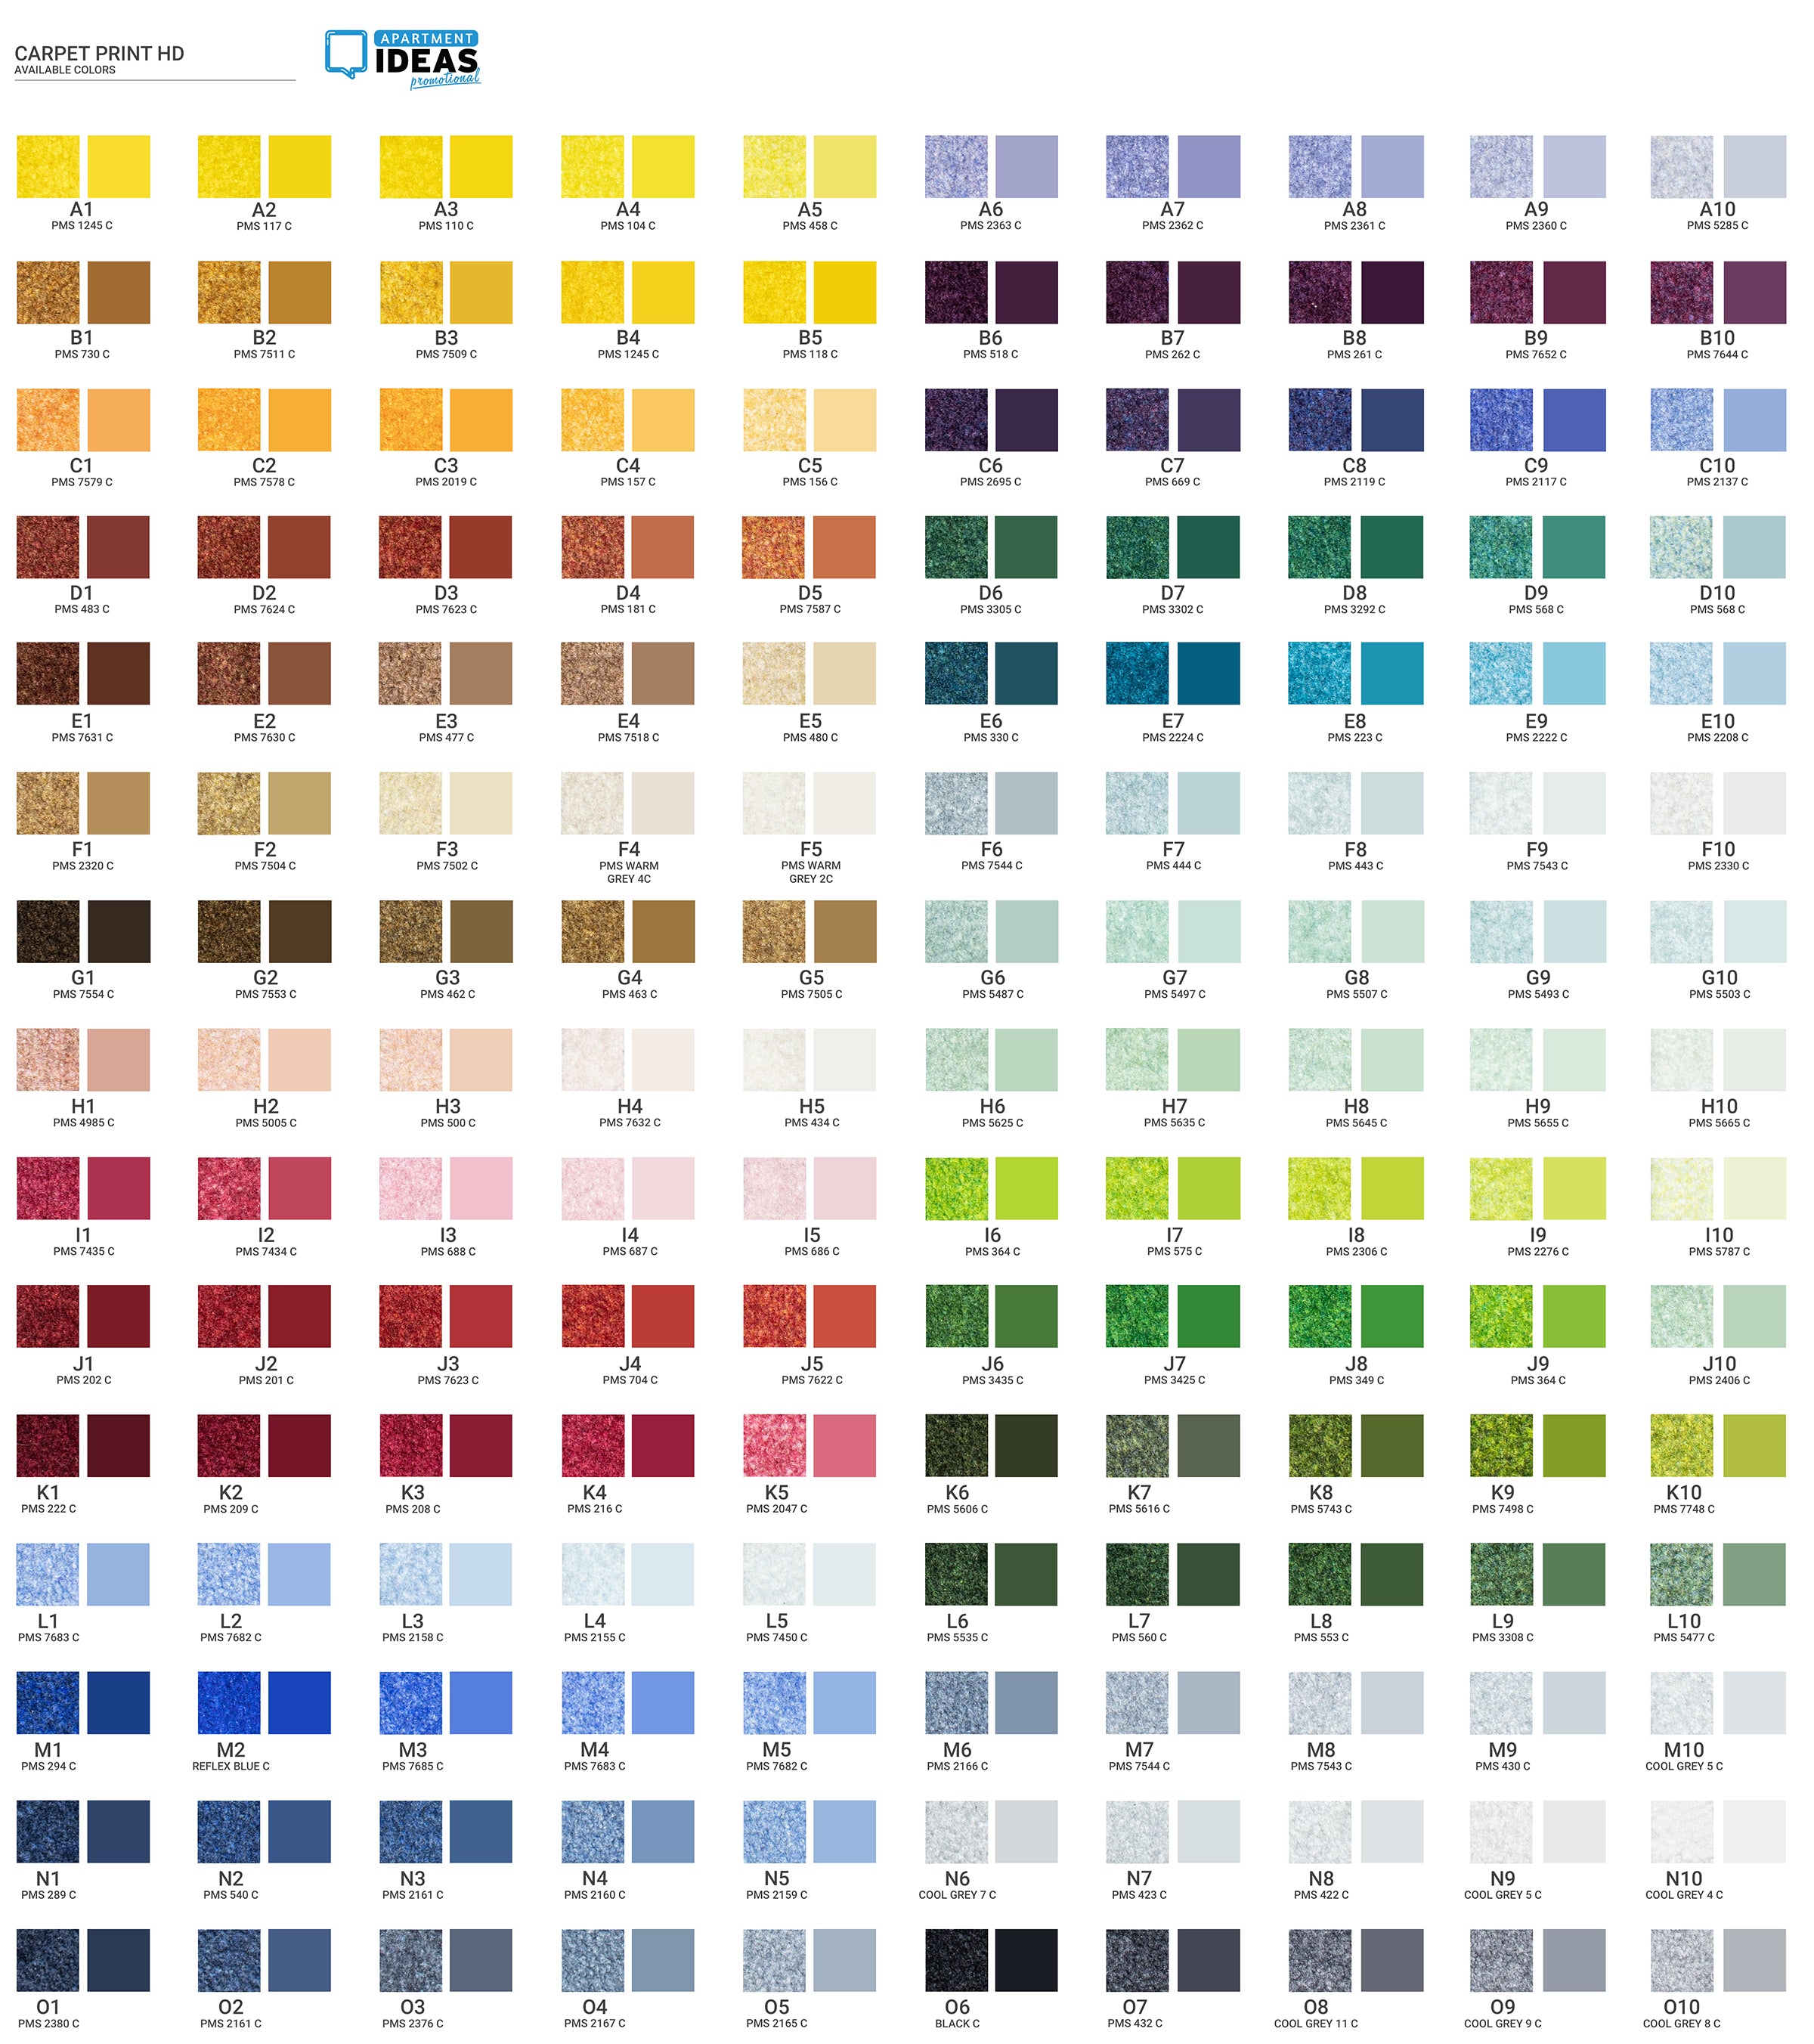 https://cdn.shopify.com/s/files/1/0071/4702/8593/files/Carpet_Print_HD_Colors.jpg?v=1614269425